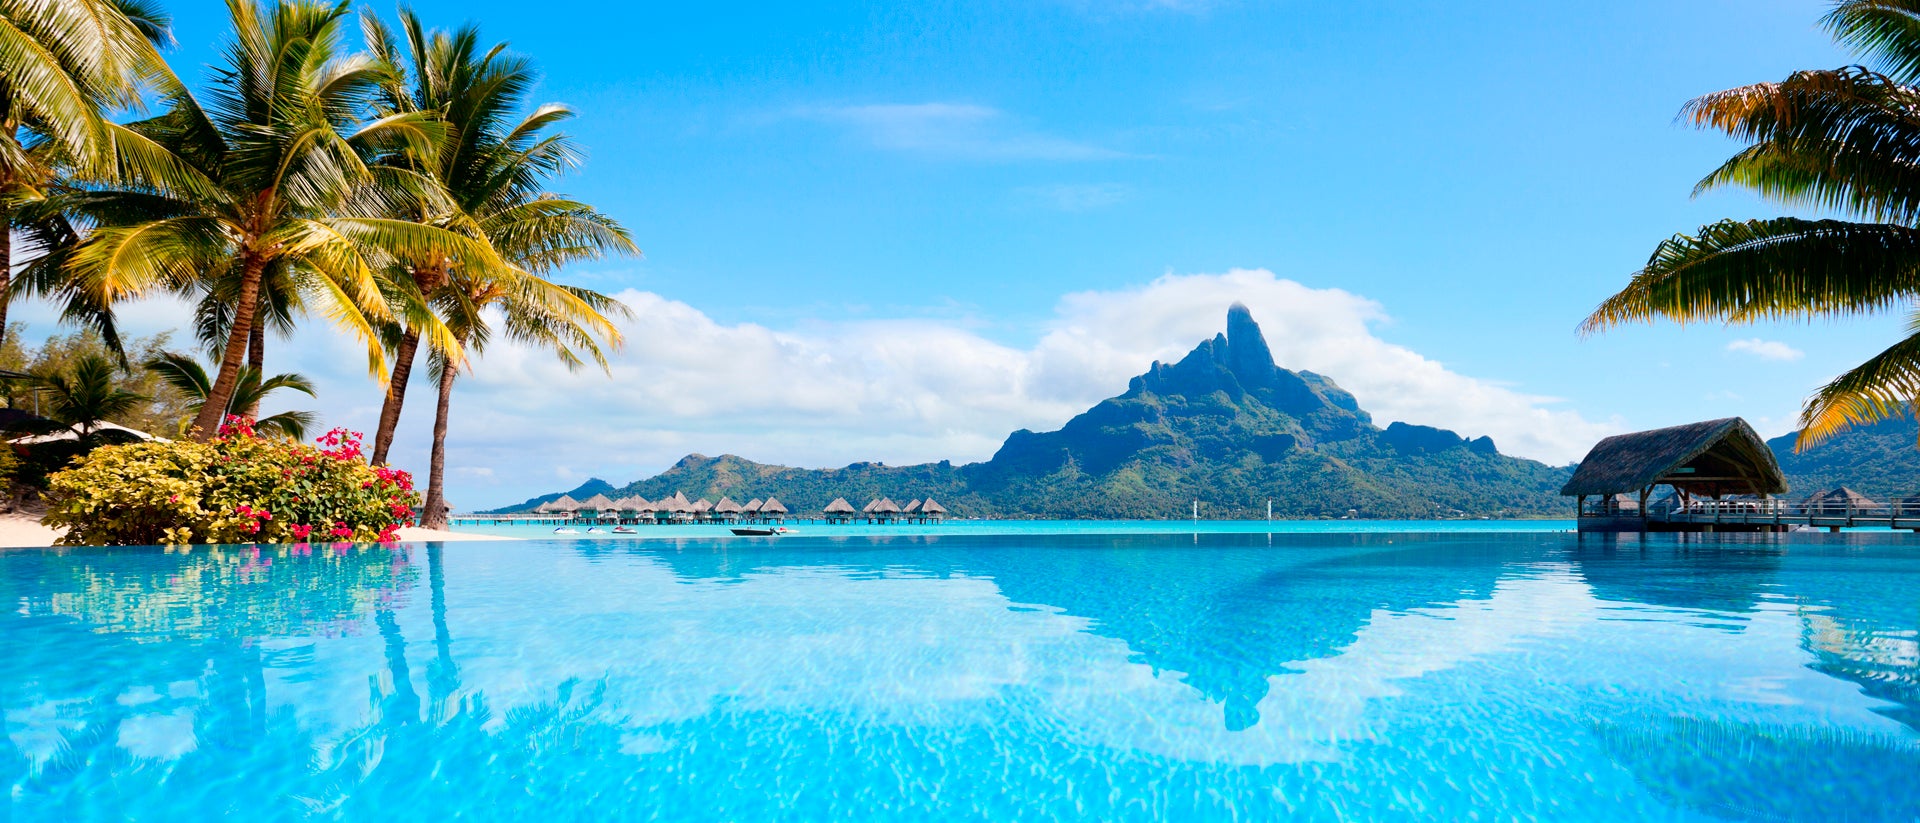 Tahiti Otroligt landskap med segelkryssning kristallklart vatten och grön ö